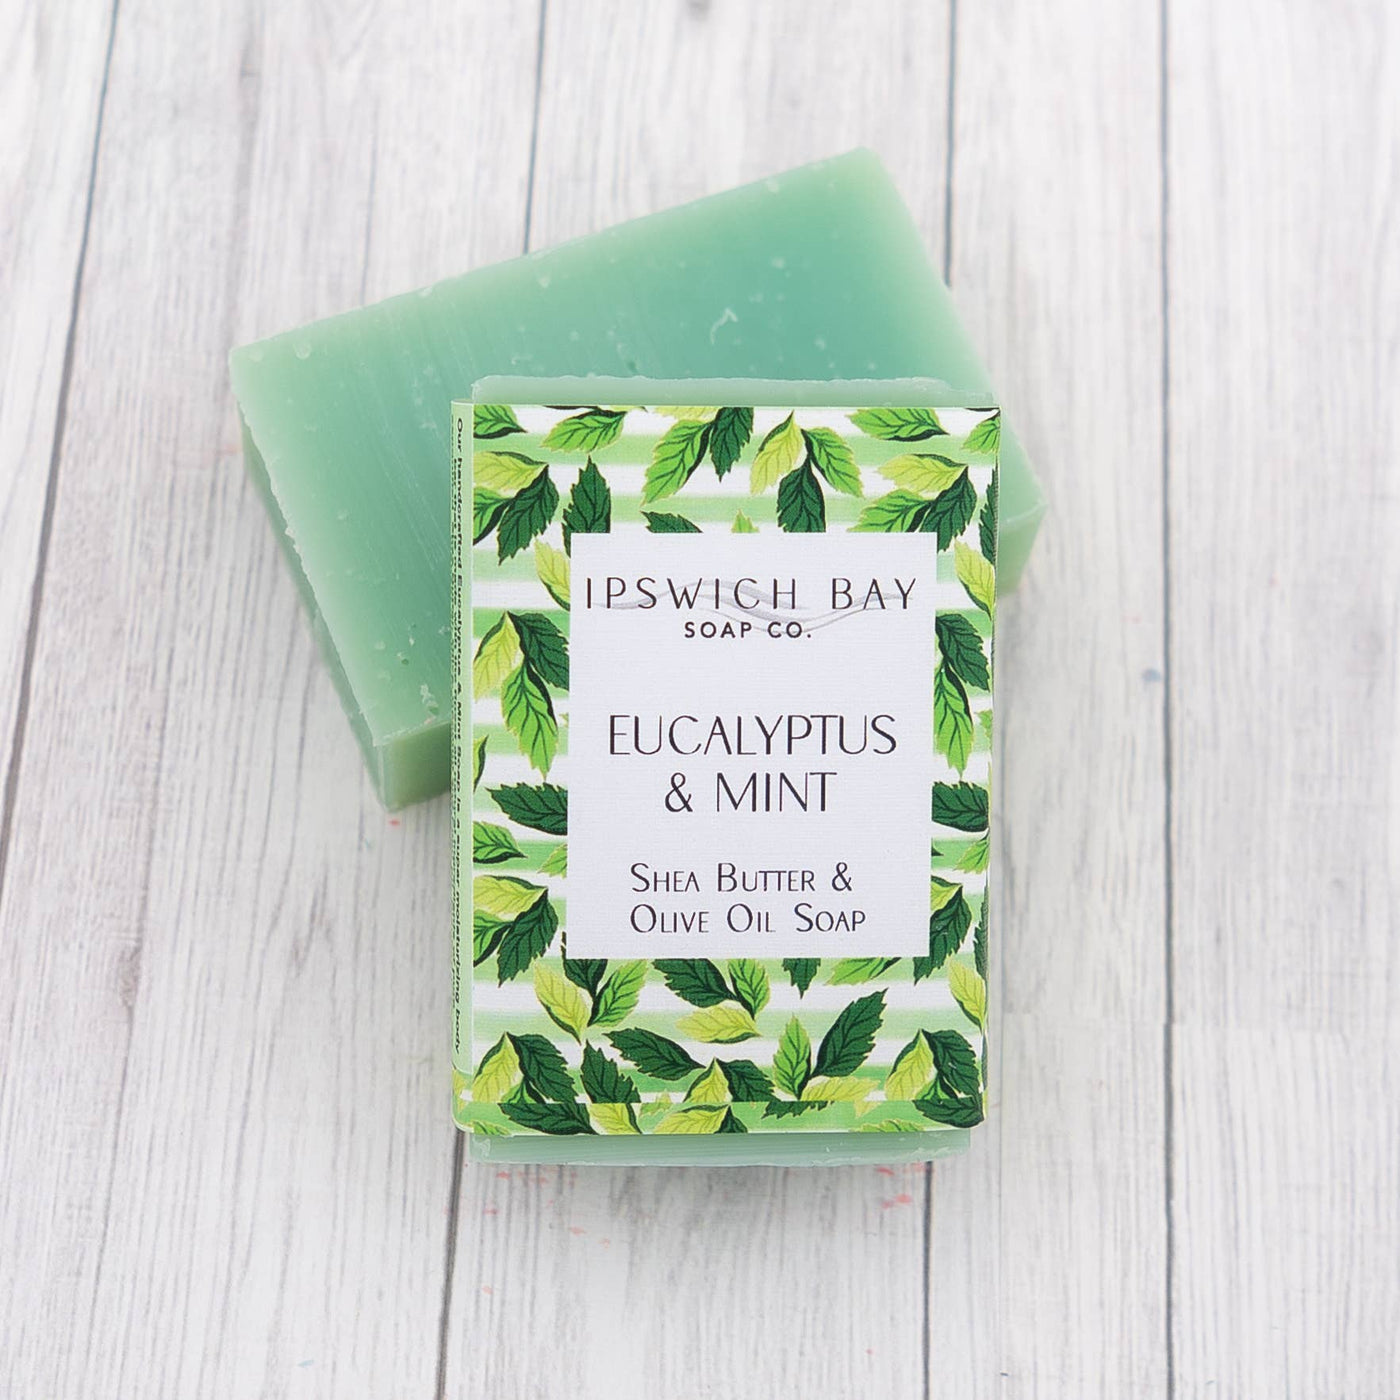 Eucalyptus & Mint Soap Bar, 4 oz.